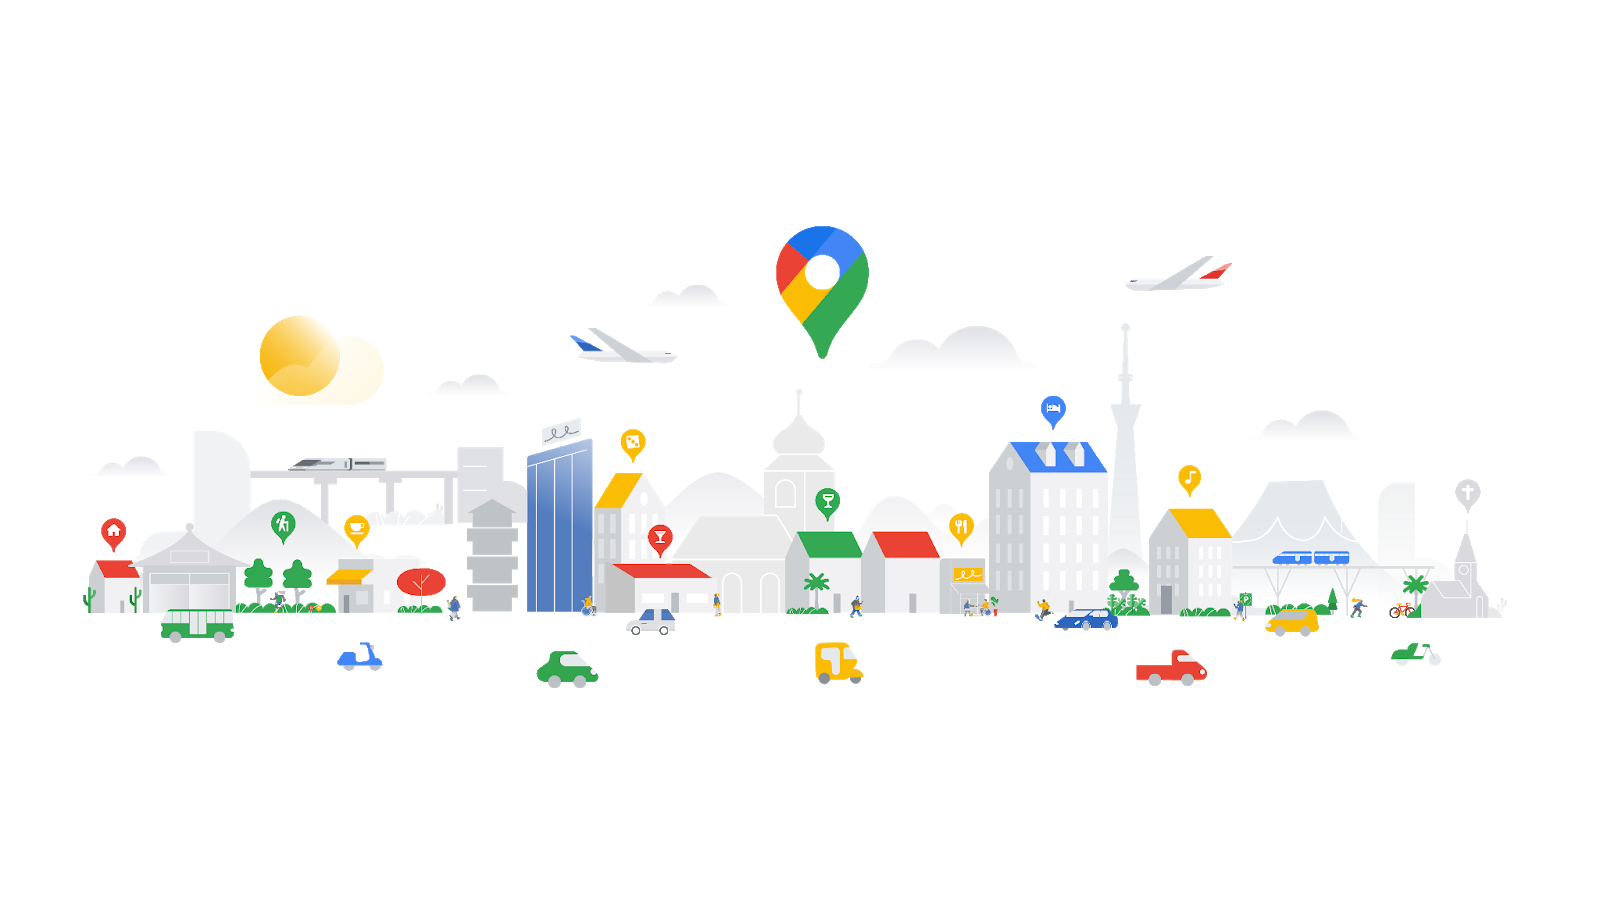 Immagine animata del pin di Google Maps e una città con palazzi e macchine.